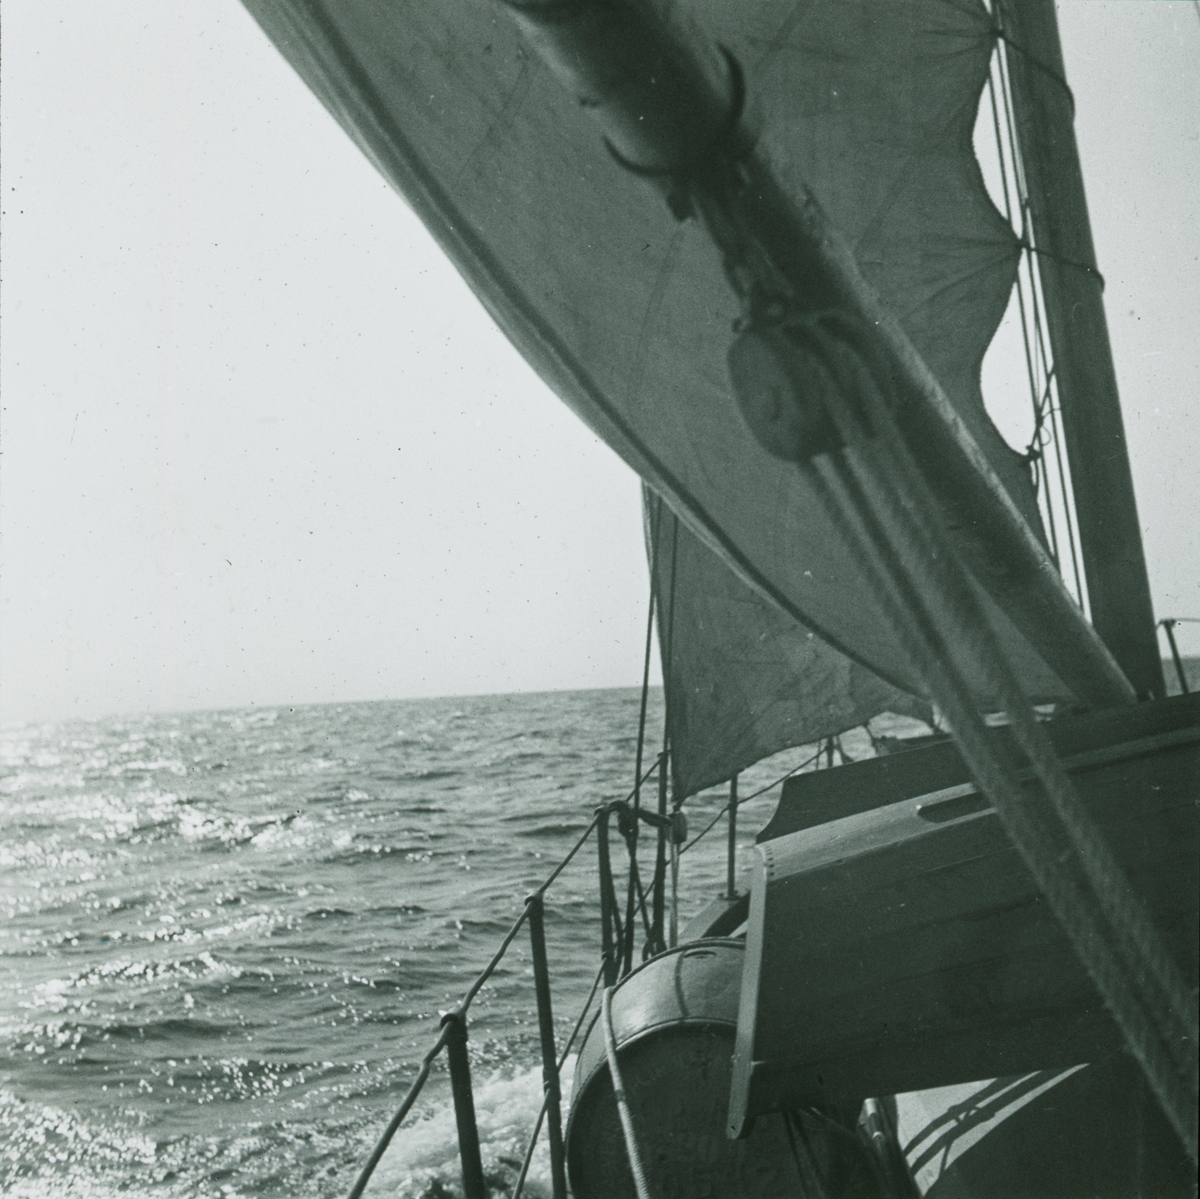 Fotografi från expedition till Spetsbergen. Motiv av båt på hav.